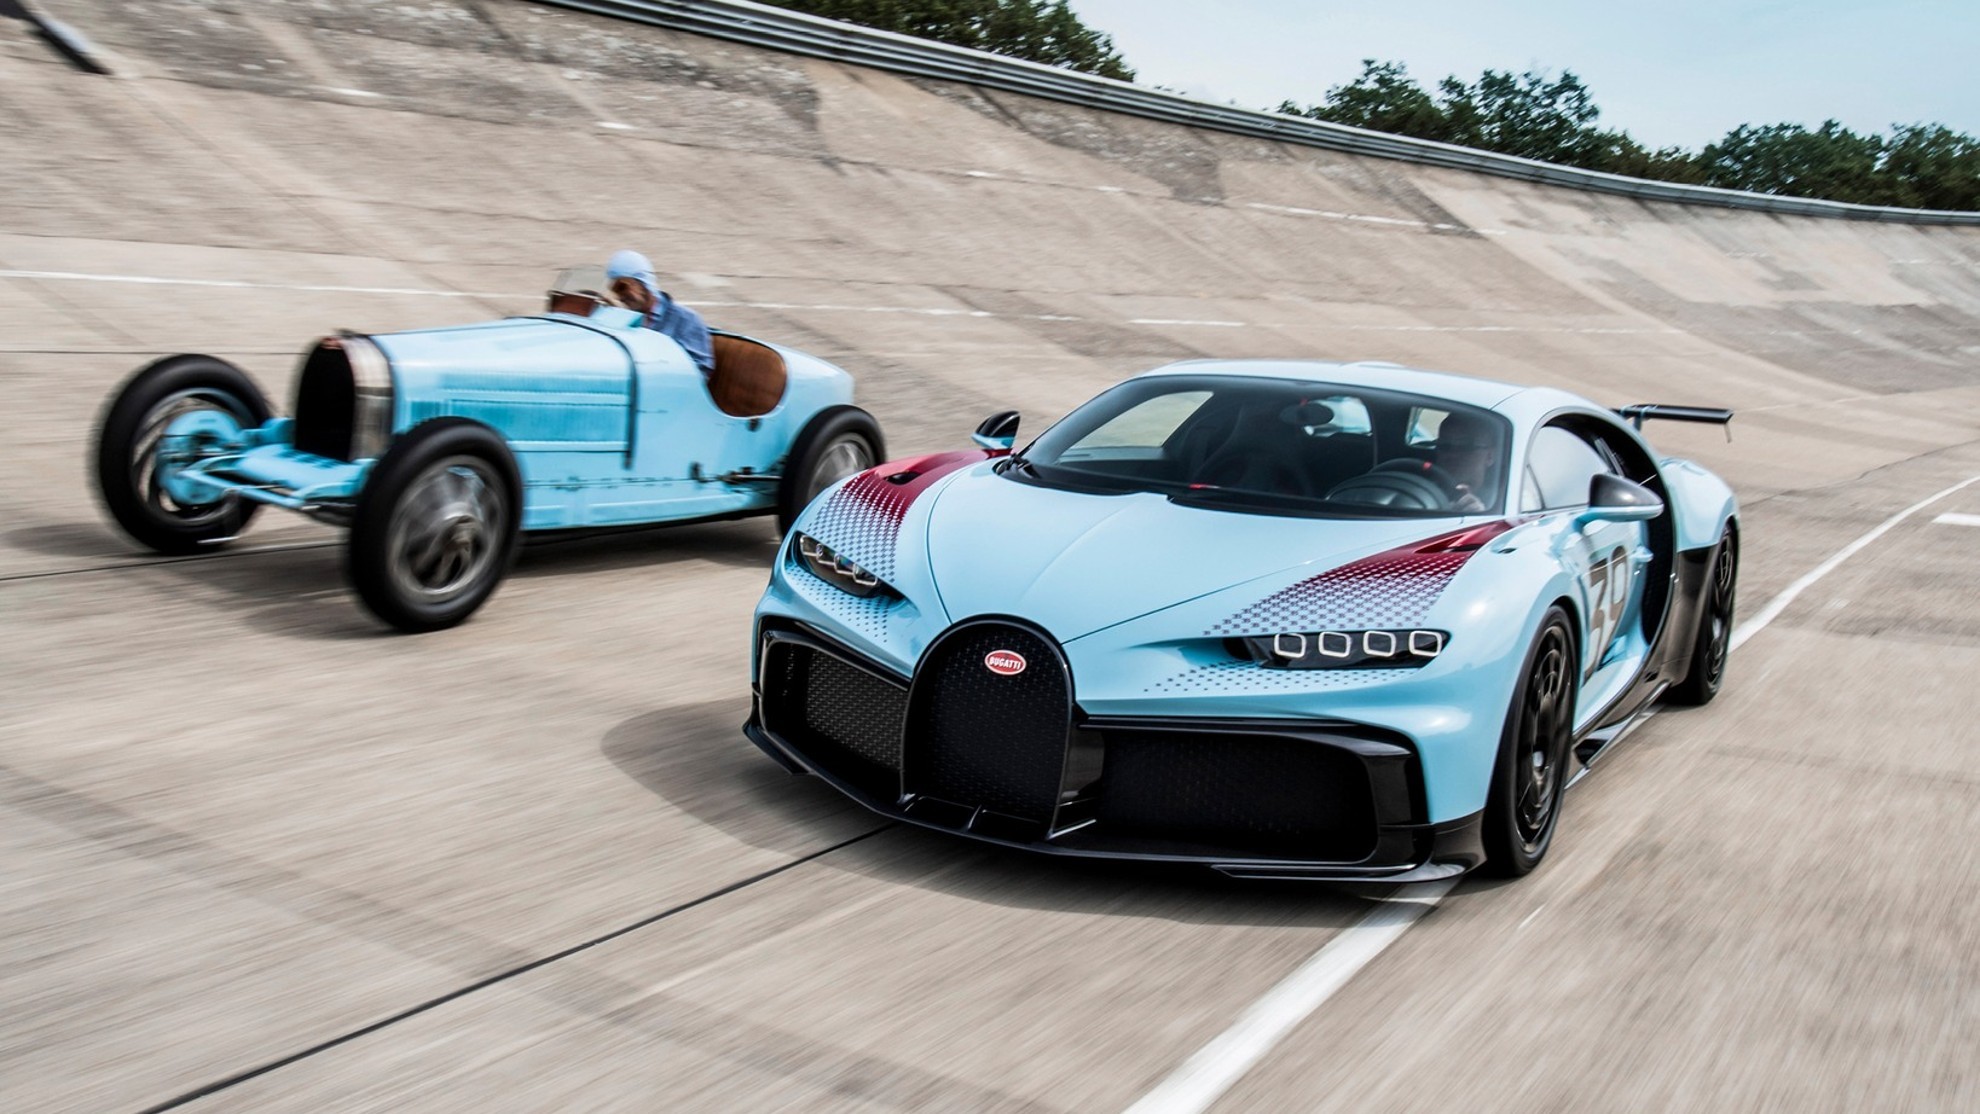 Bugatti Chiron Pur Sport Grand Prix Edition - Sur Mesure - personalizacion - individualuizacion - coches deportivos - Ettore Bugatti - Louis Chiron